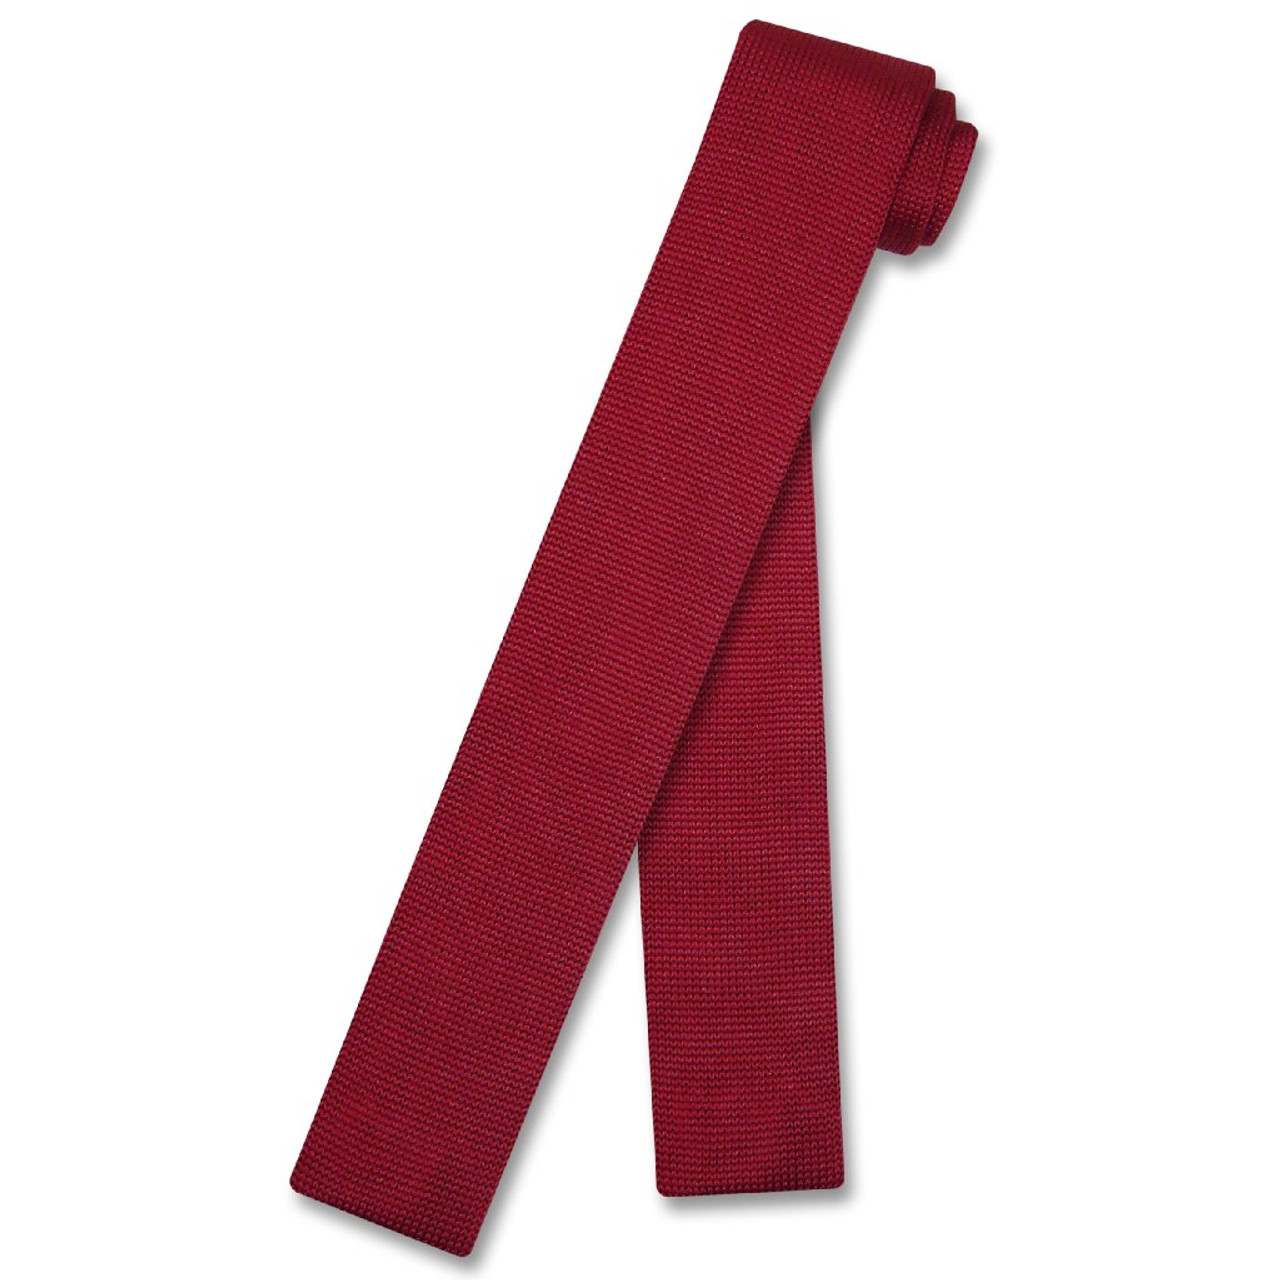 Biagio KNITTED Neck Tie Solid DARK RED Color Men's Knit NeckTie